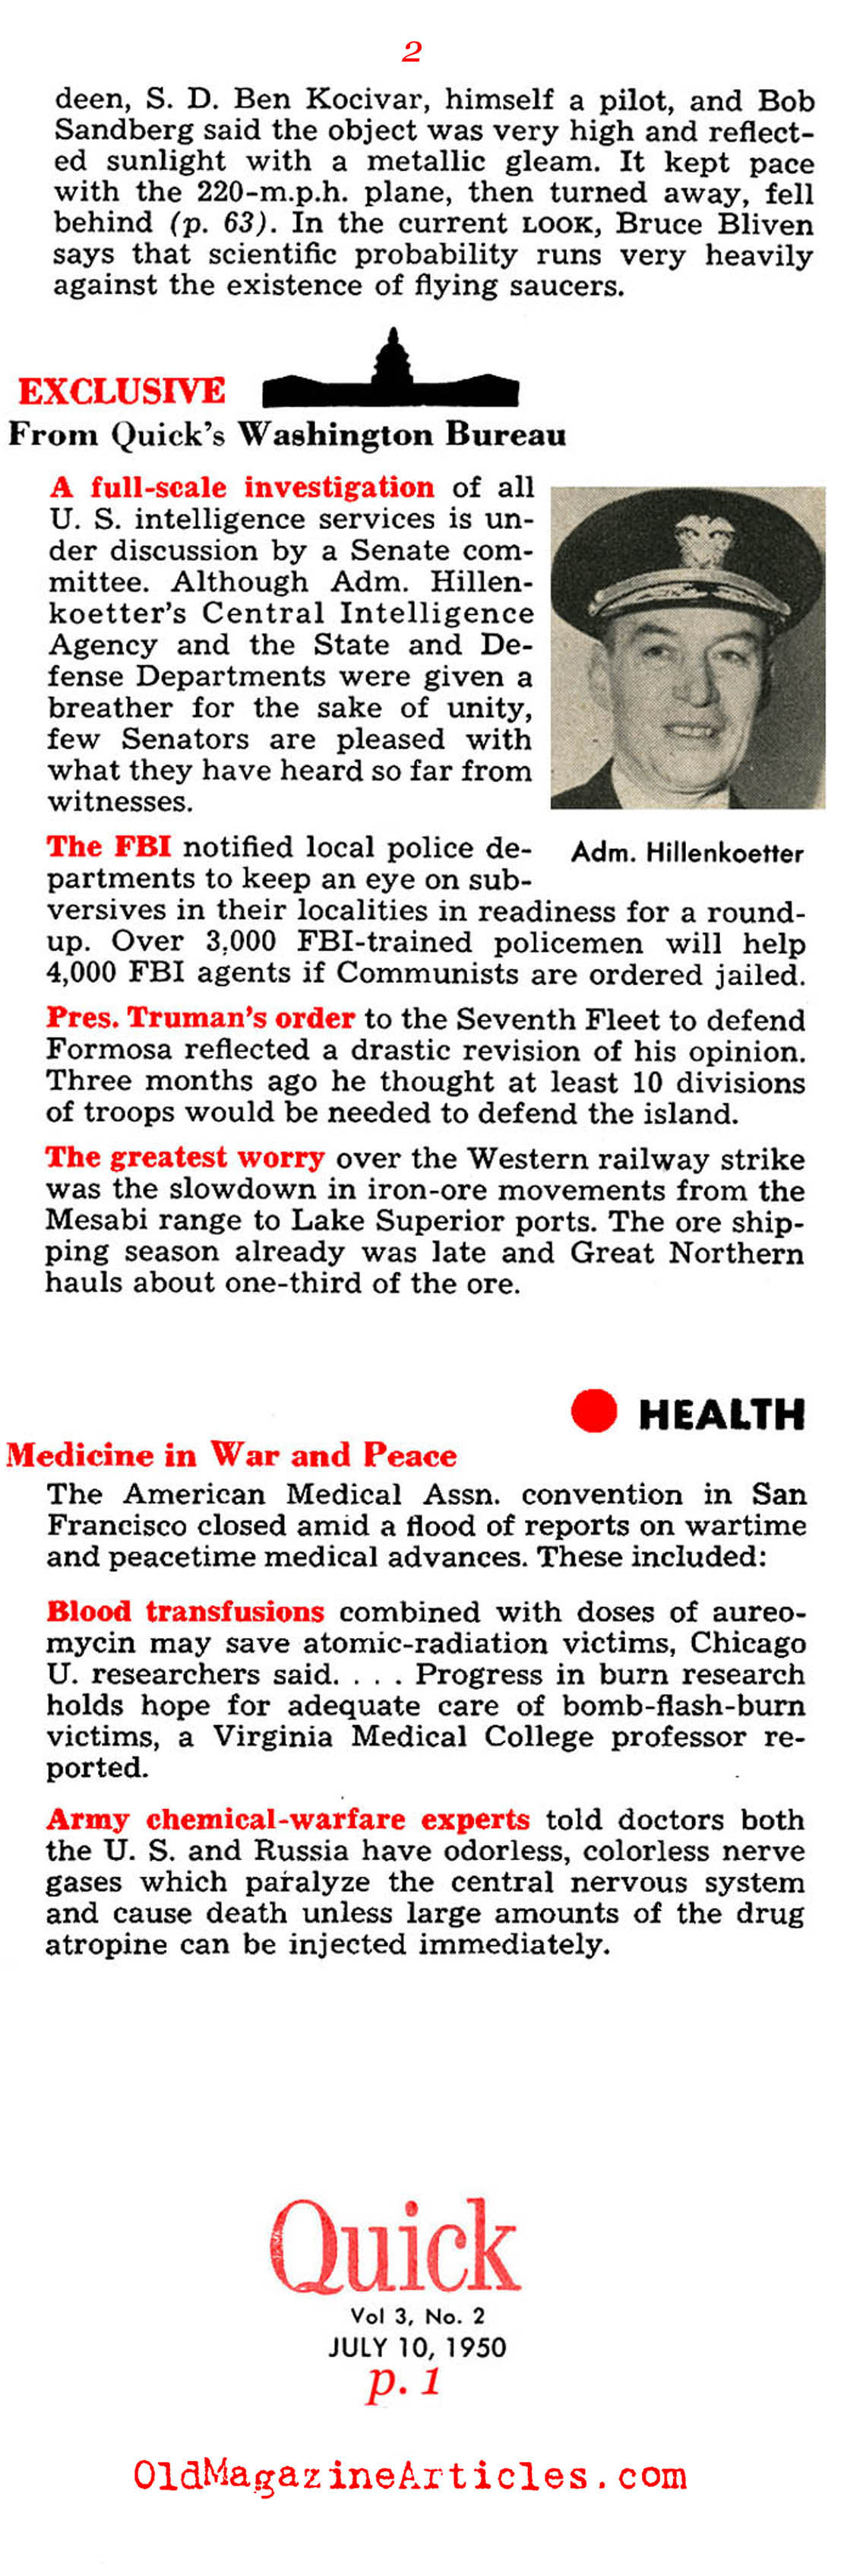 Truman Decides to Defend South Korea (Quick Magazine, 1950)